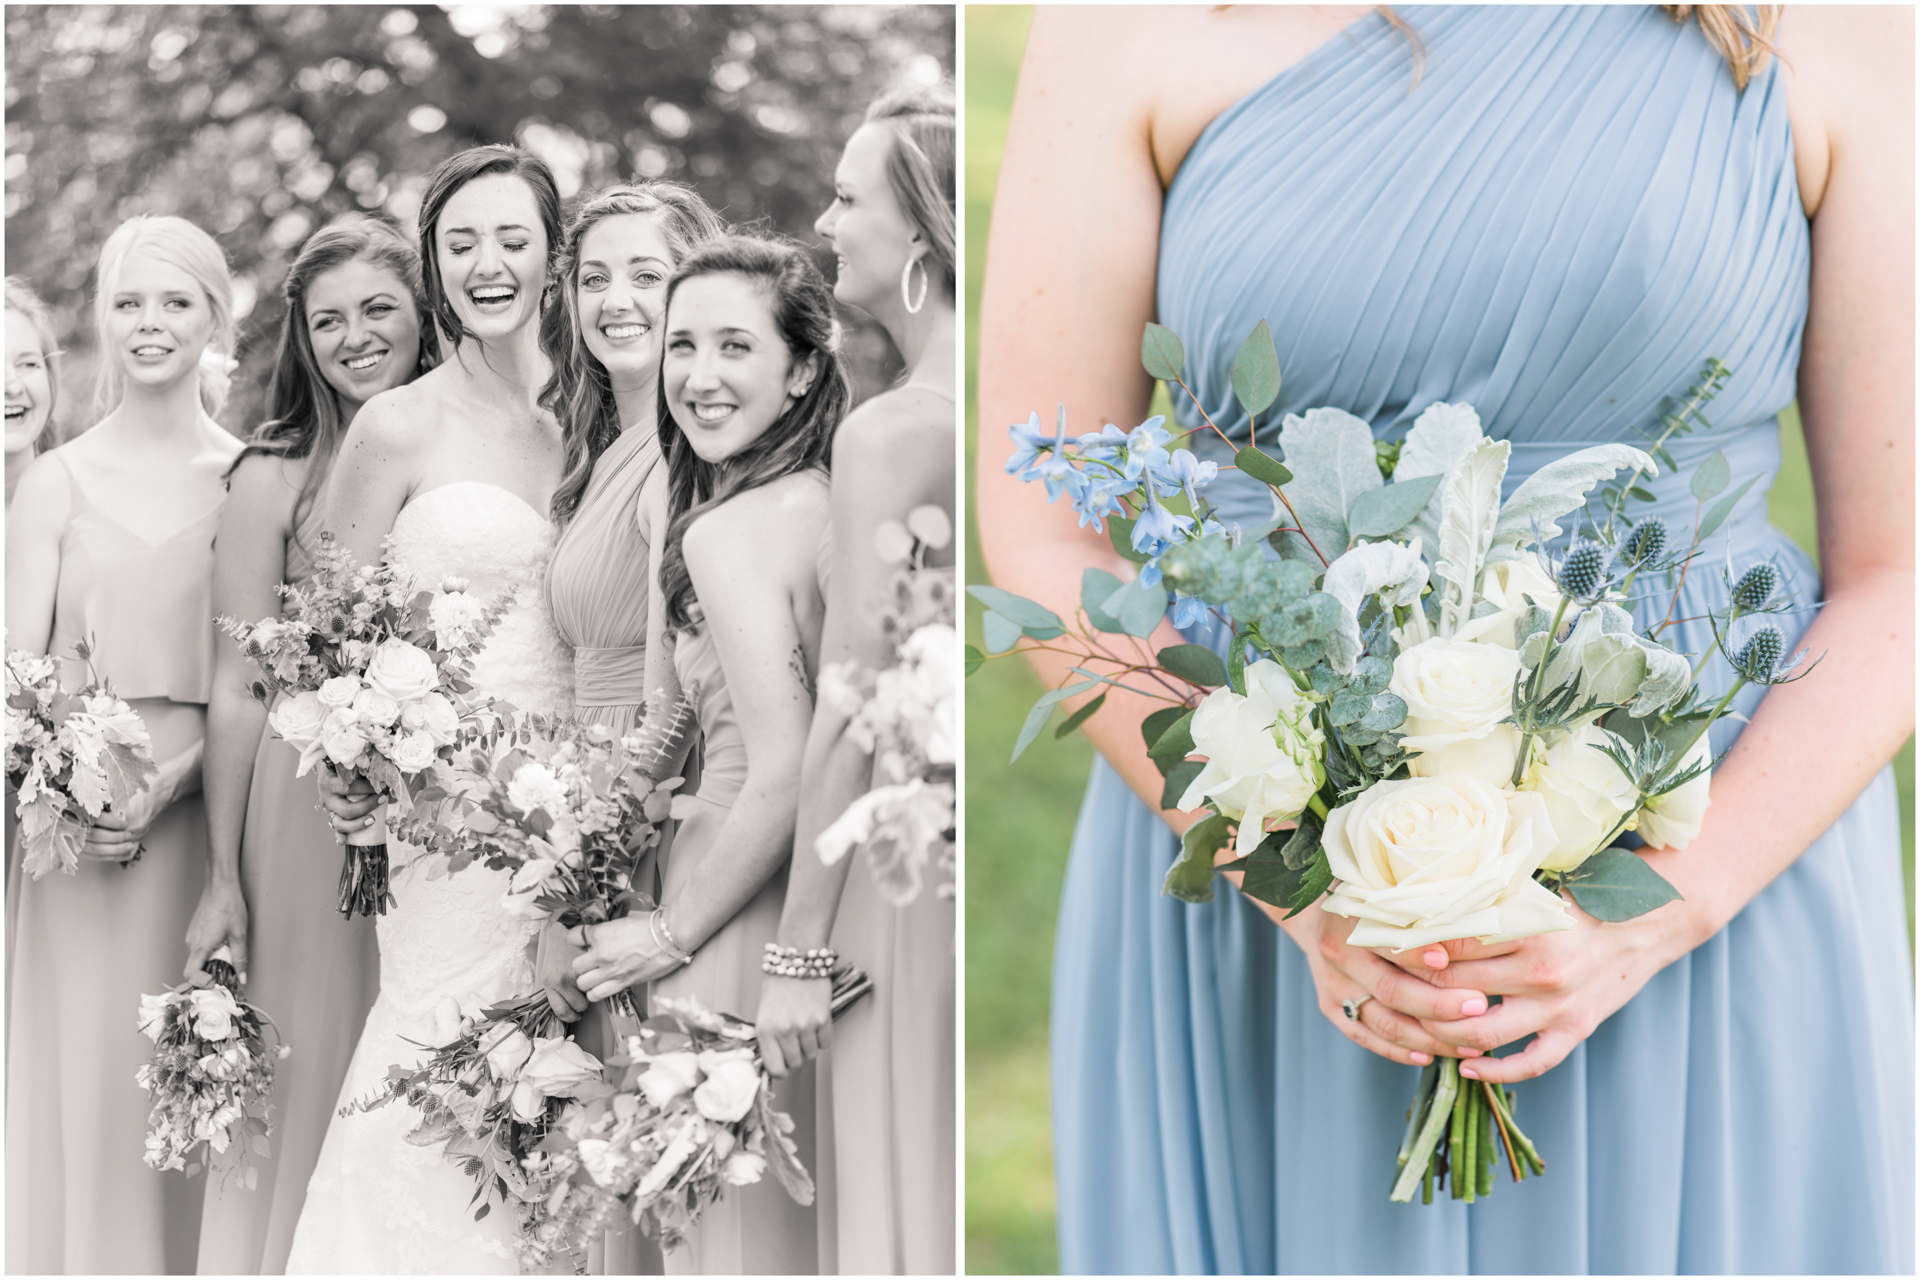 Dusty Blue Bridesmaid dress with the petal pick up bouquet - Huntsville AL